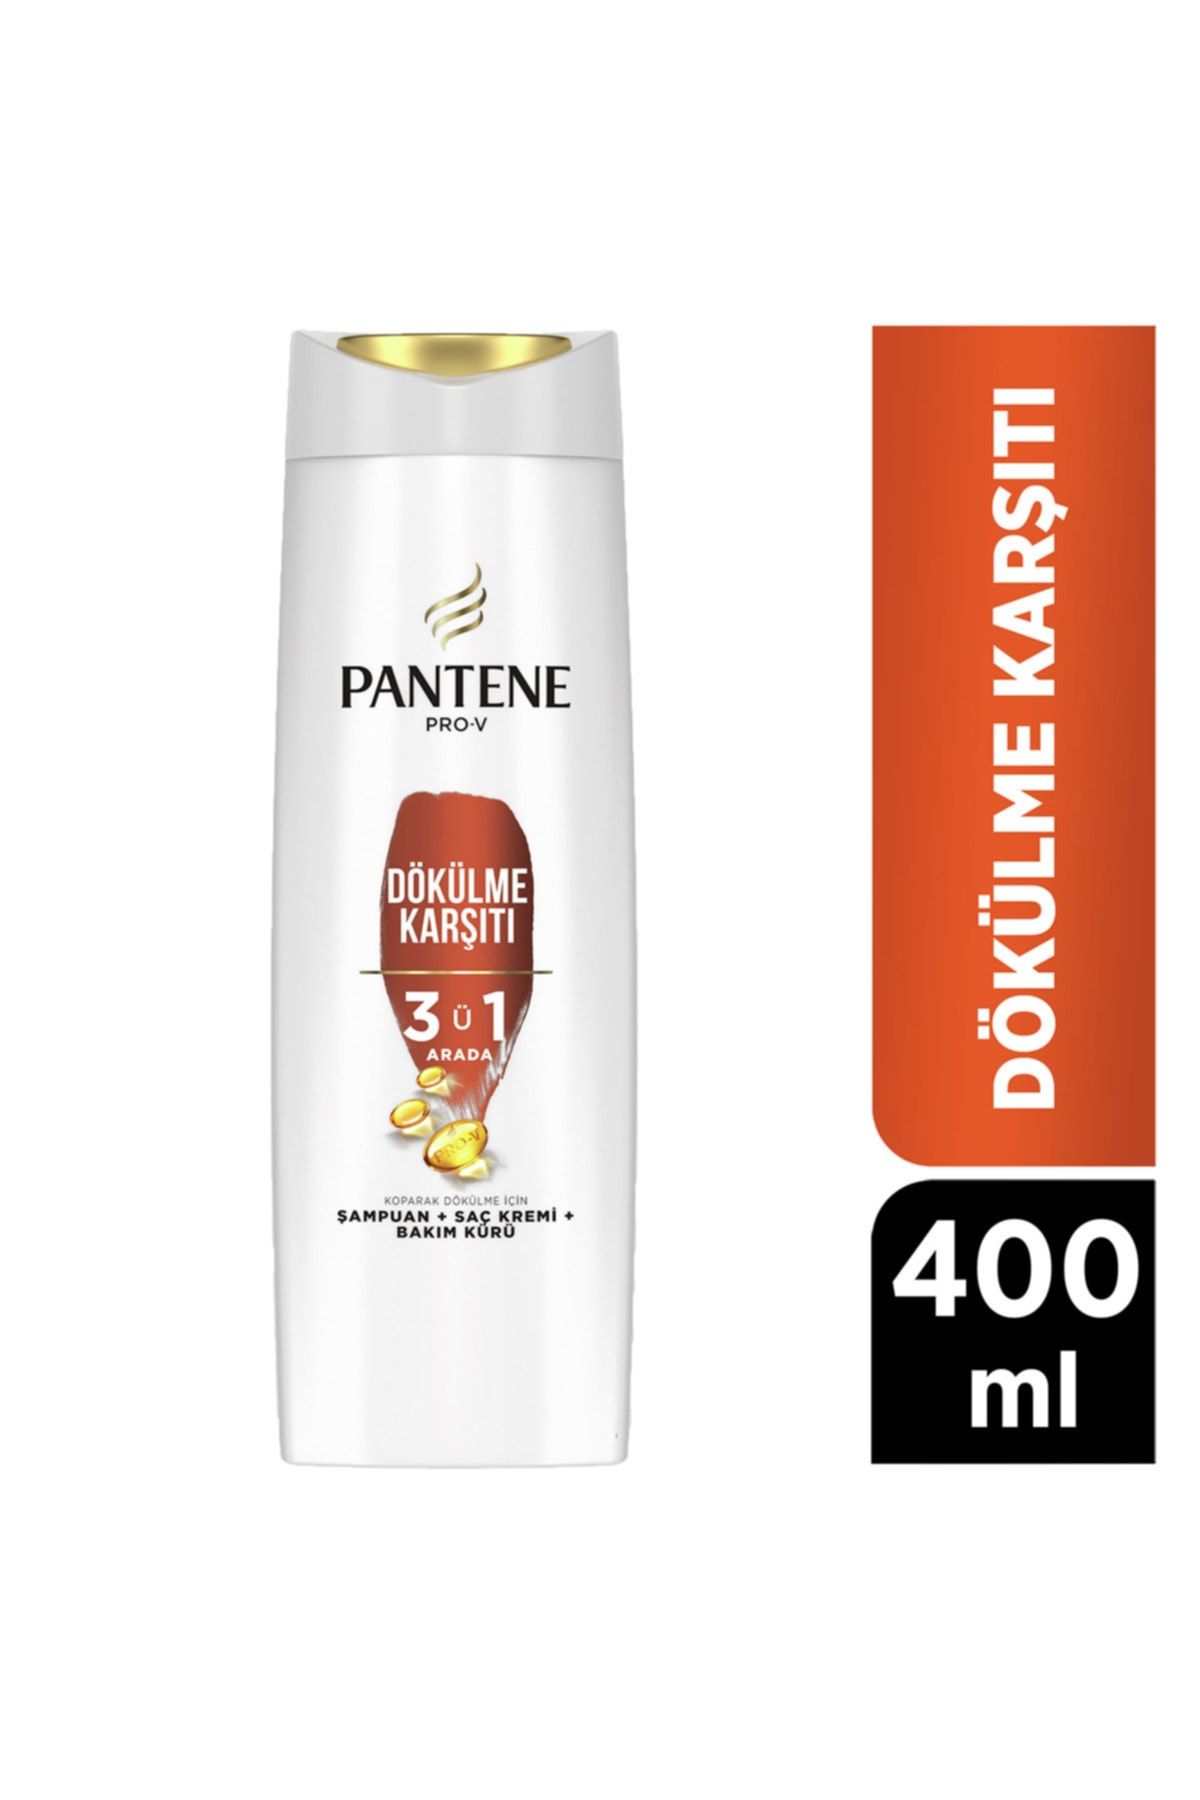 Pantene 3'ü 1 Arada Şampuan, Saç Bakım Kremi, Bakım Kürü Dökülme Karşıtı 400 Ml